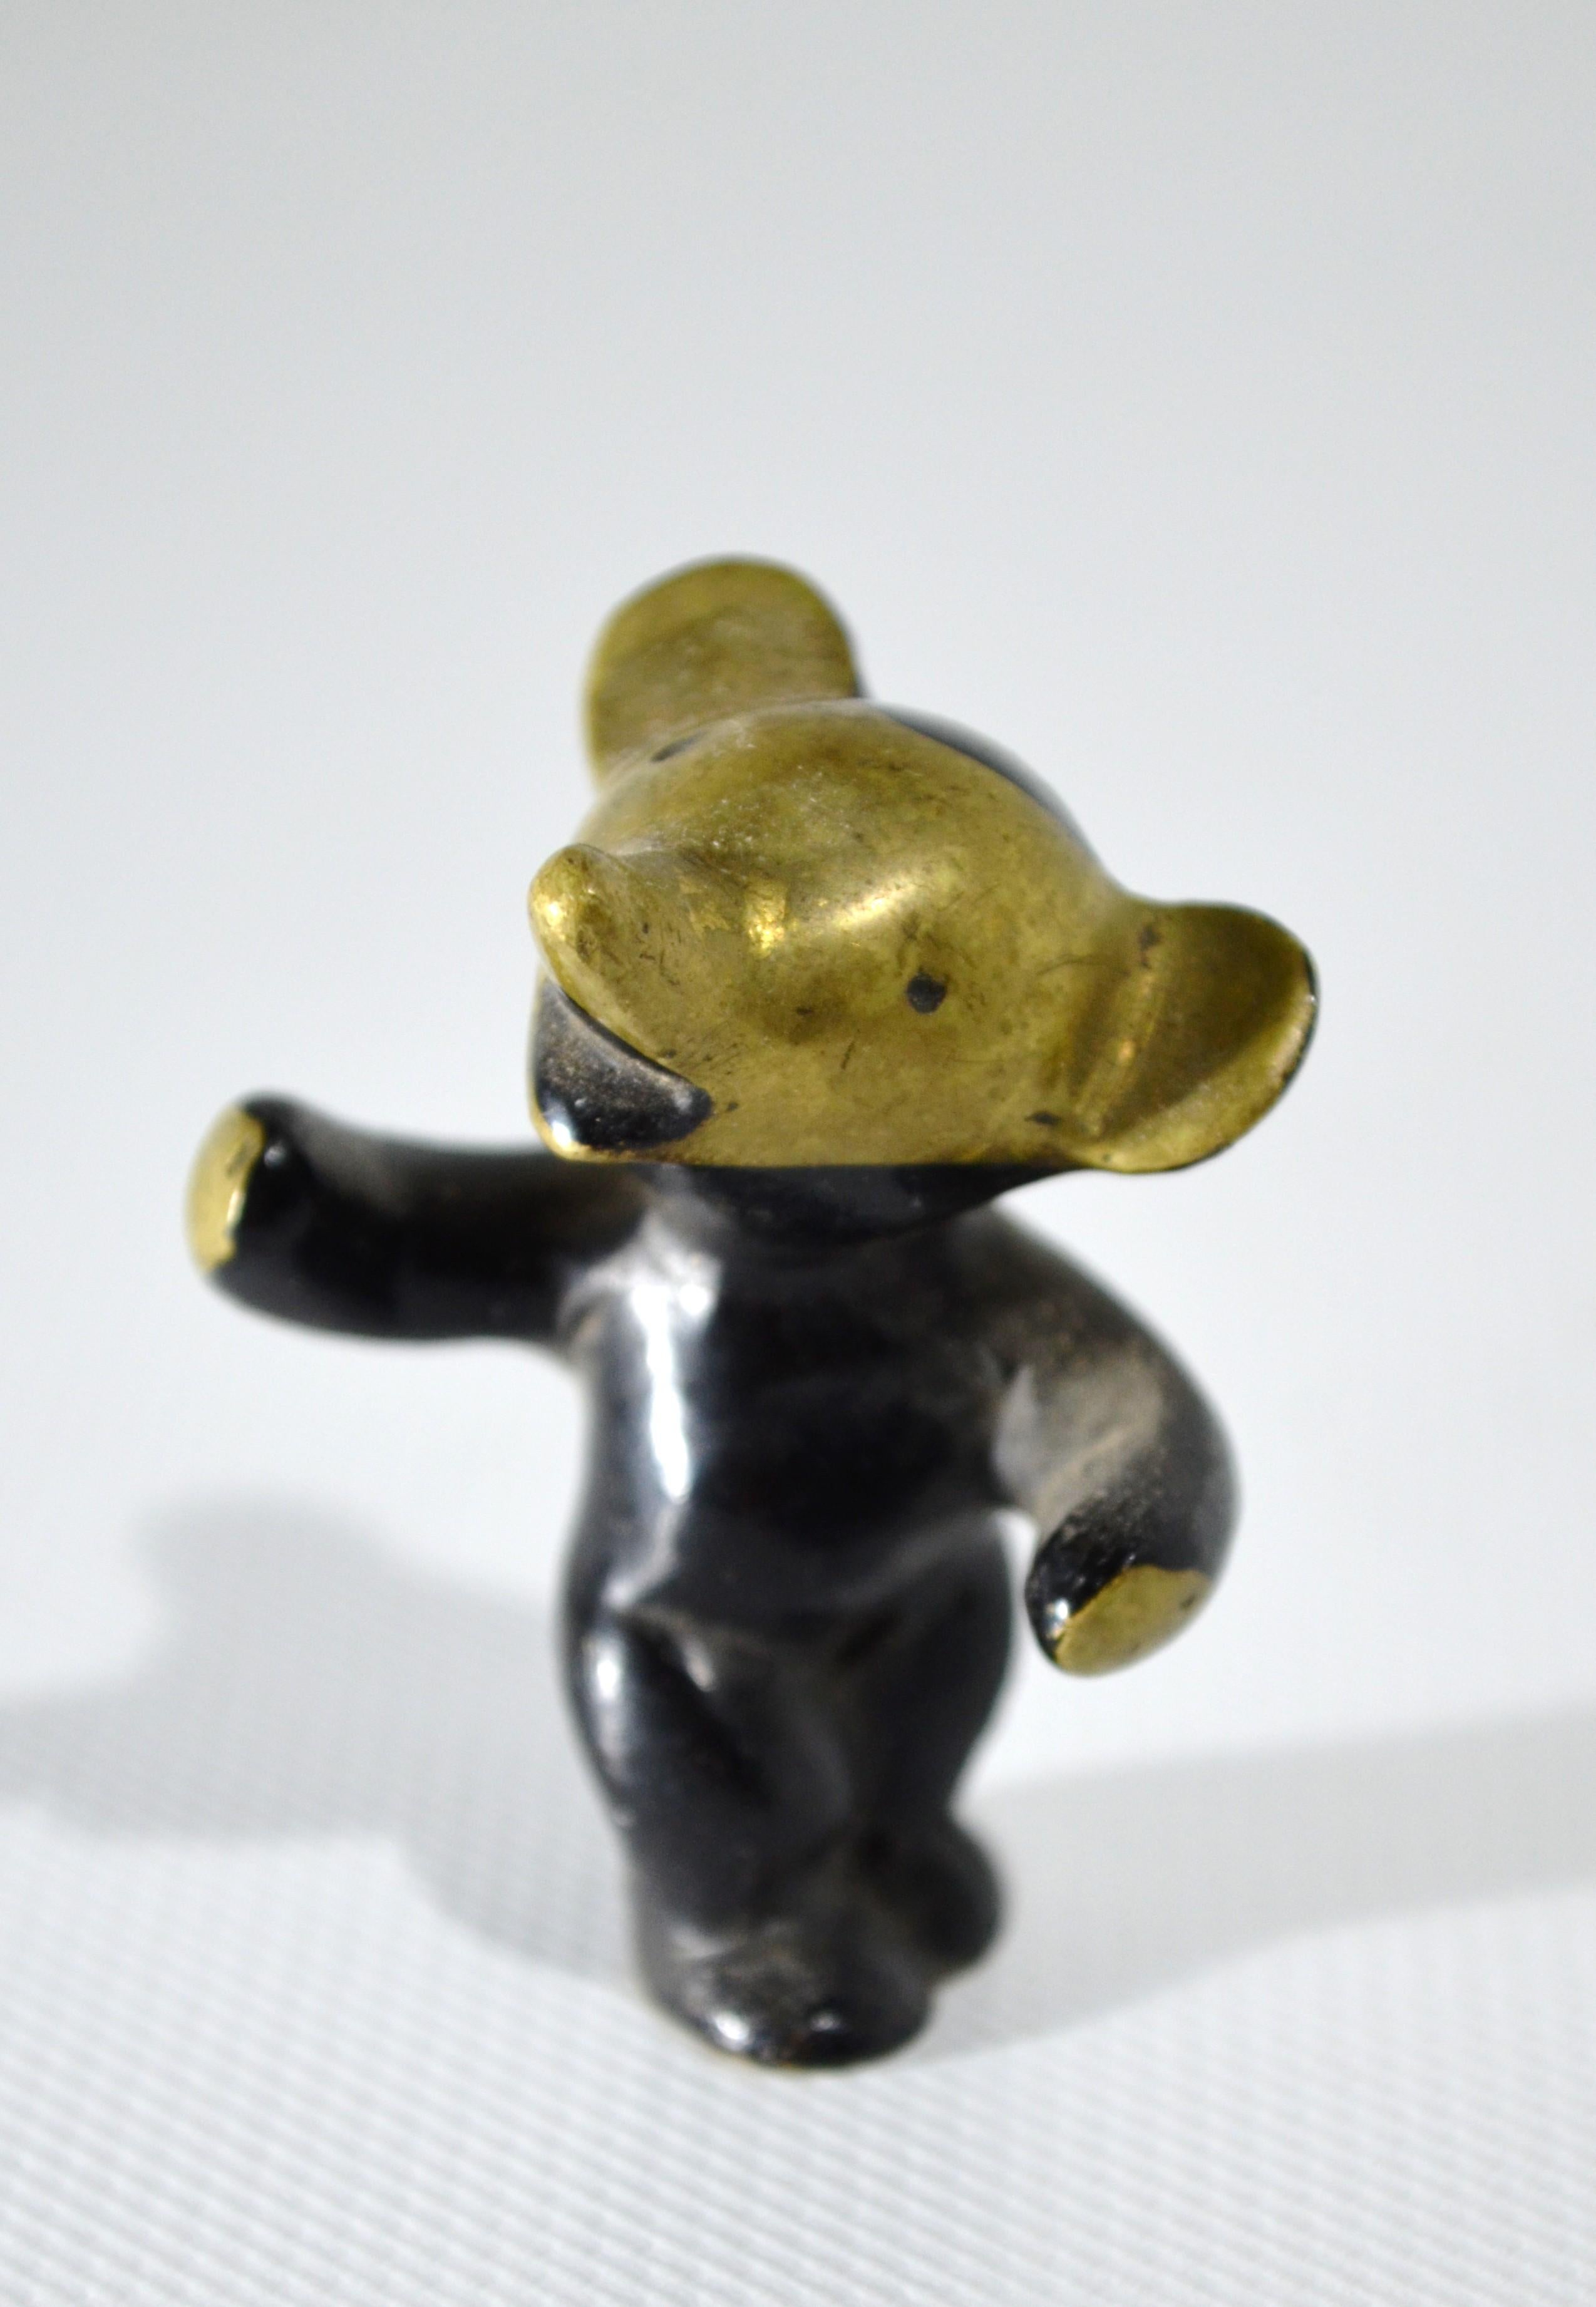 Magnifique et charmant petit ours en peluche en ligne noire et dorée du célèbre créateur designer
Walter Bosse (1904 - 1979)
Belle patine d'origine du milieu du 20e siècle.

hauteur : 50 mm